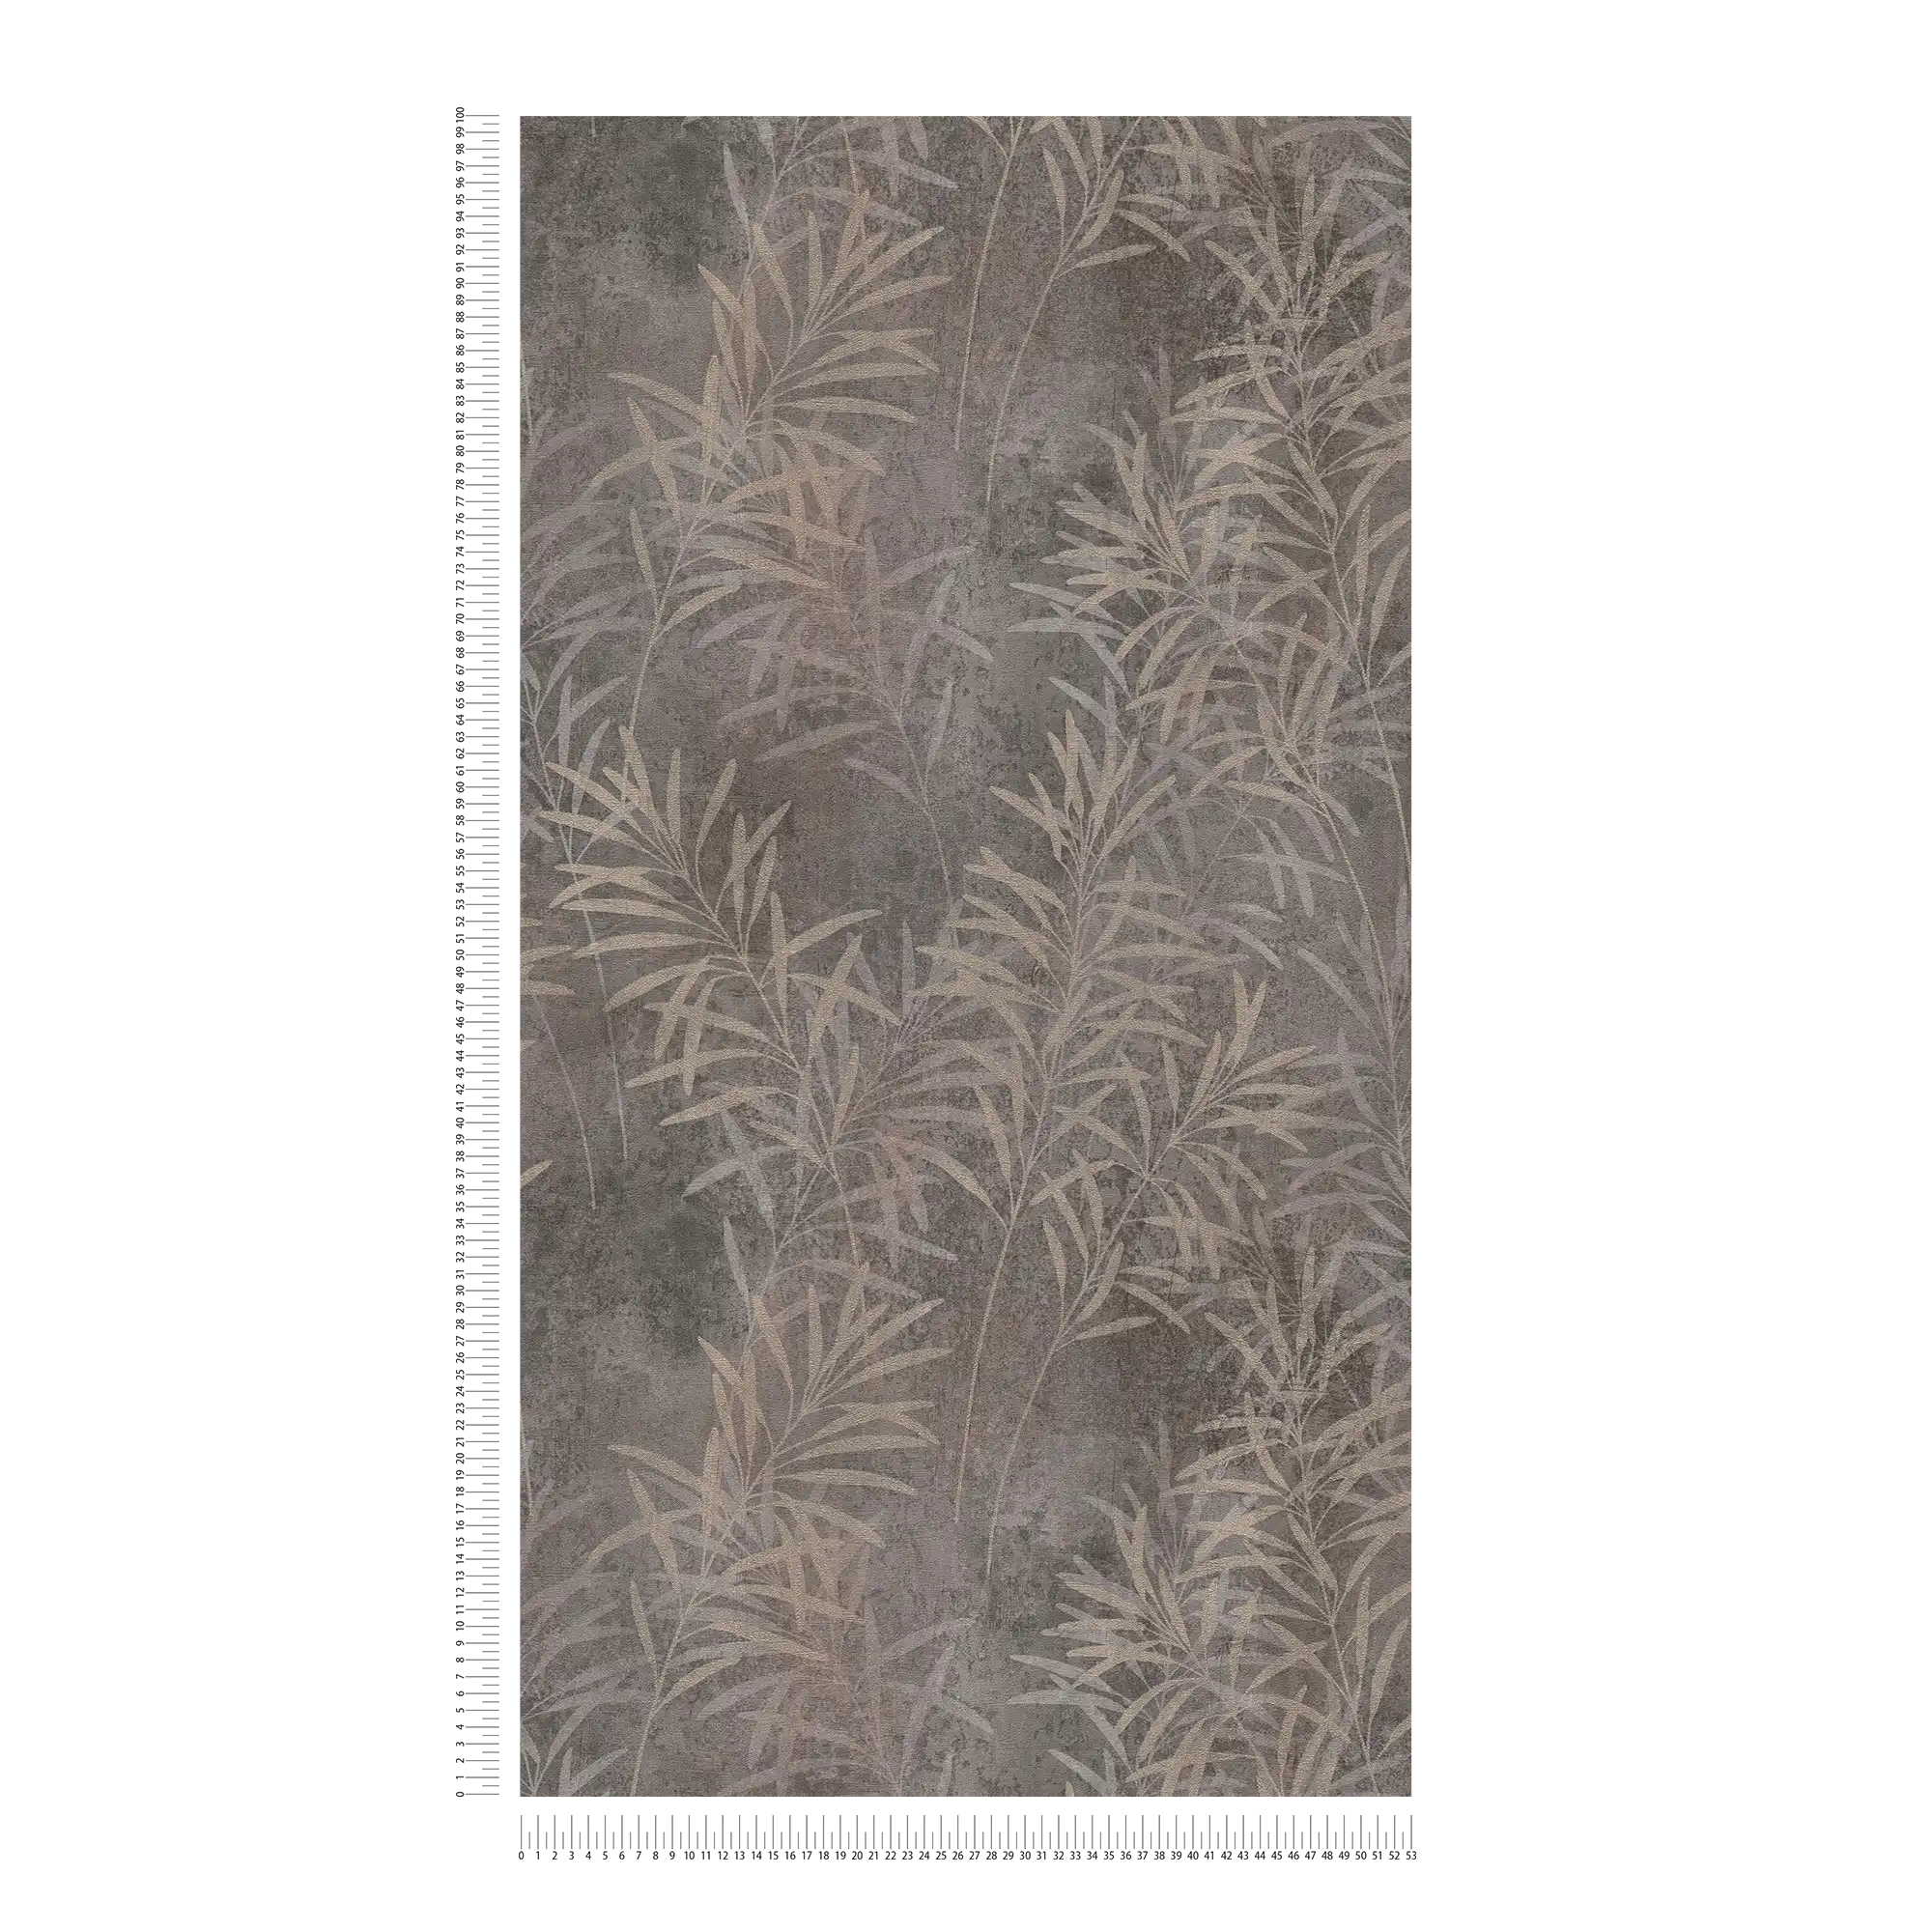             Carta da parati floreale in tessuto non tessuto con motivo a erba e struttura fine - grigio, beige, metallizzato
        